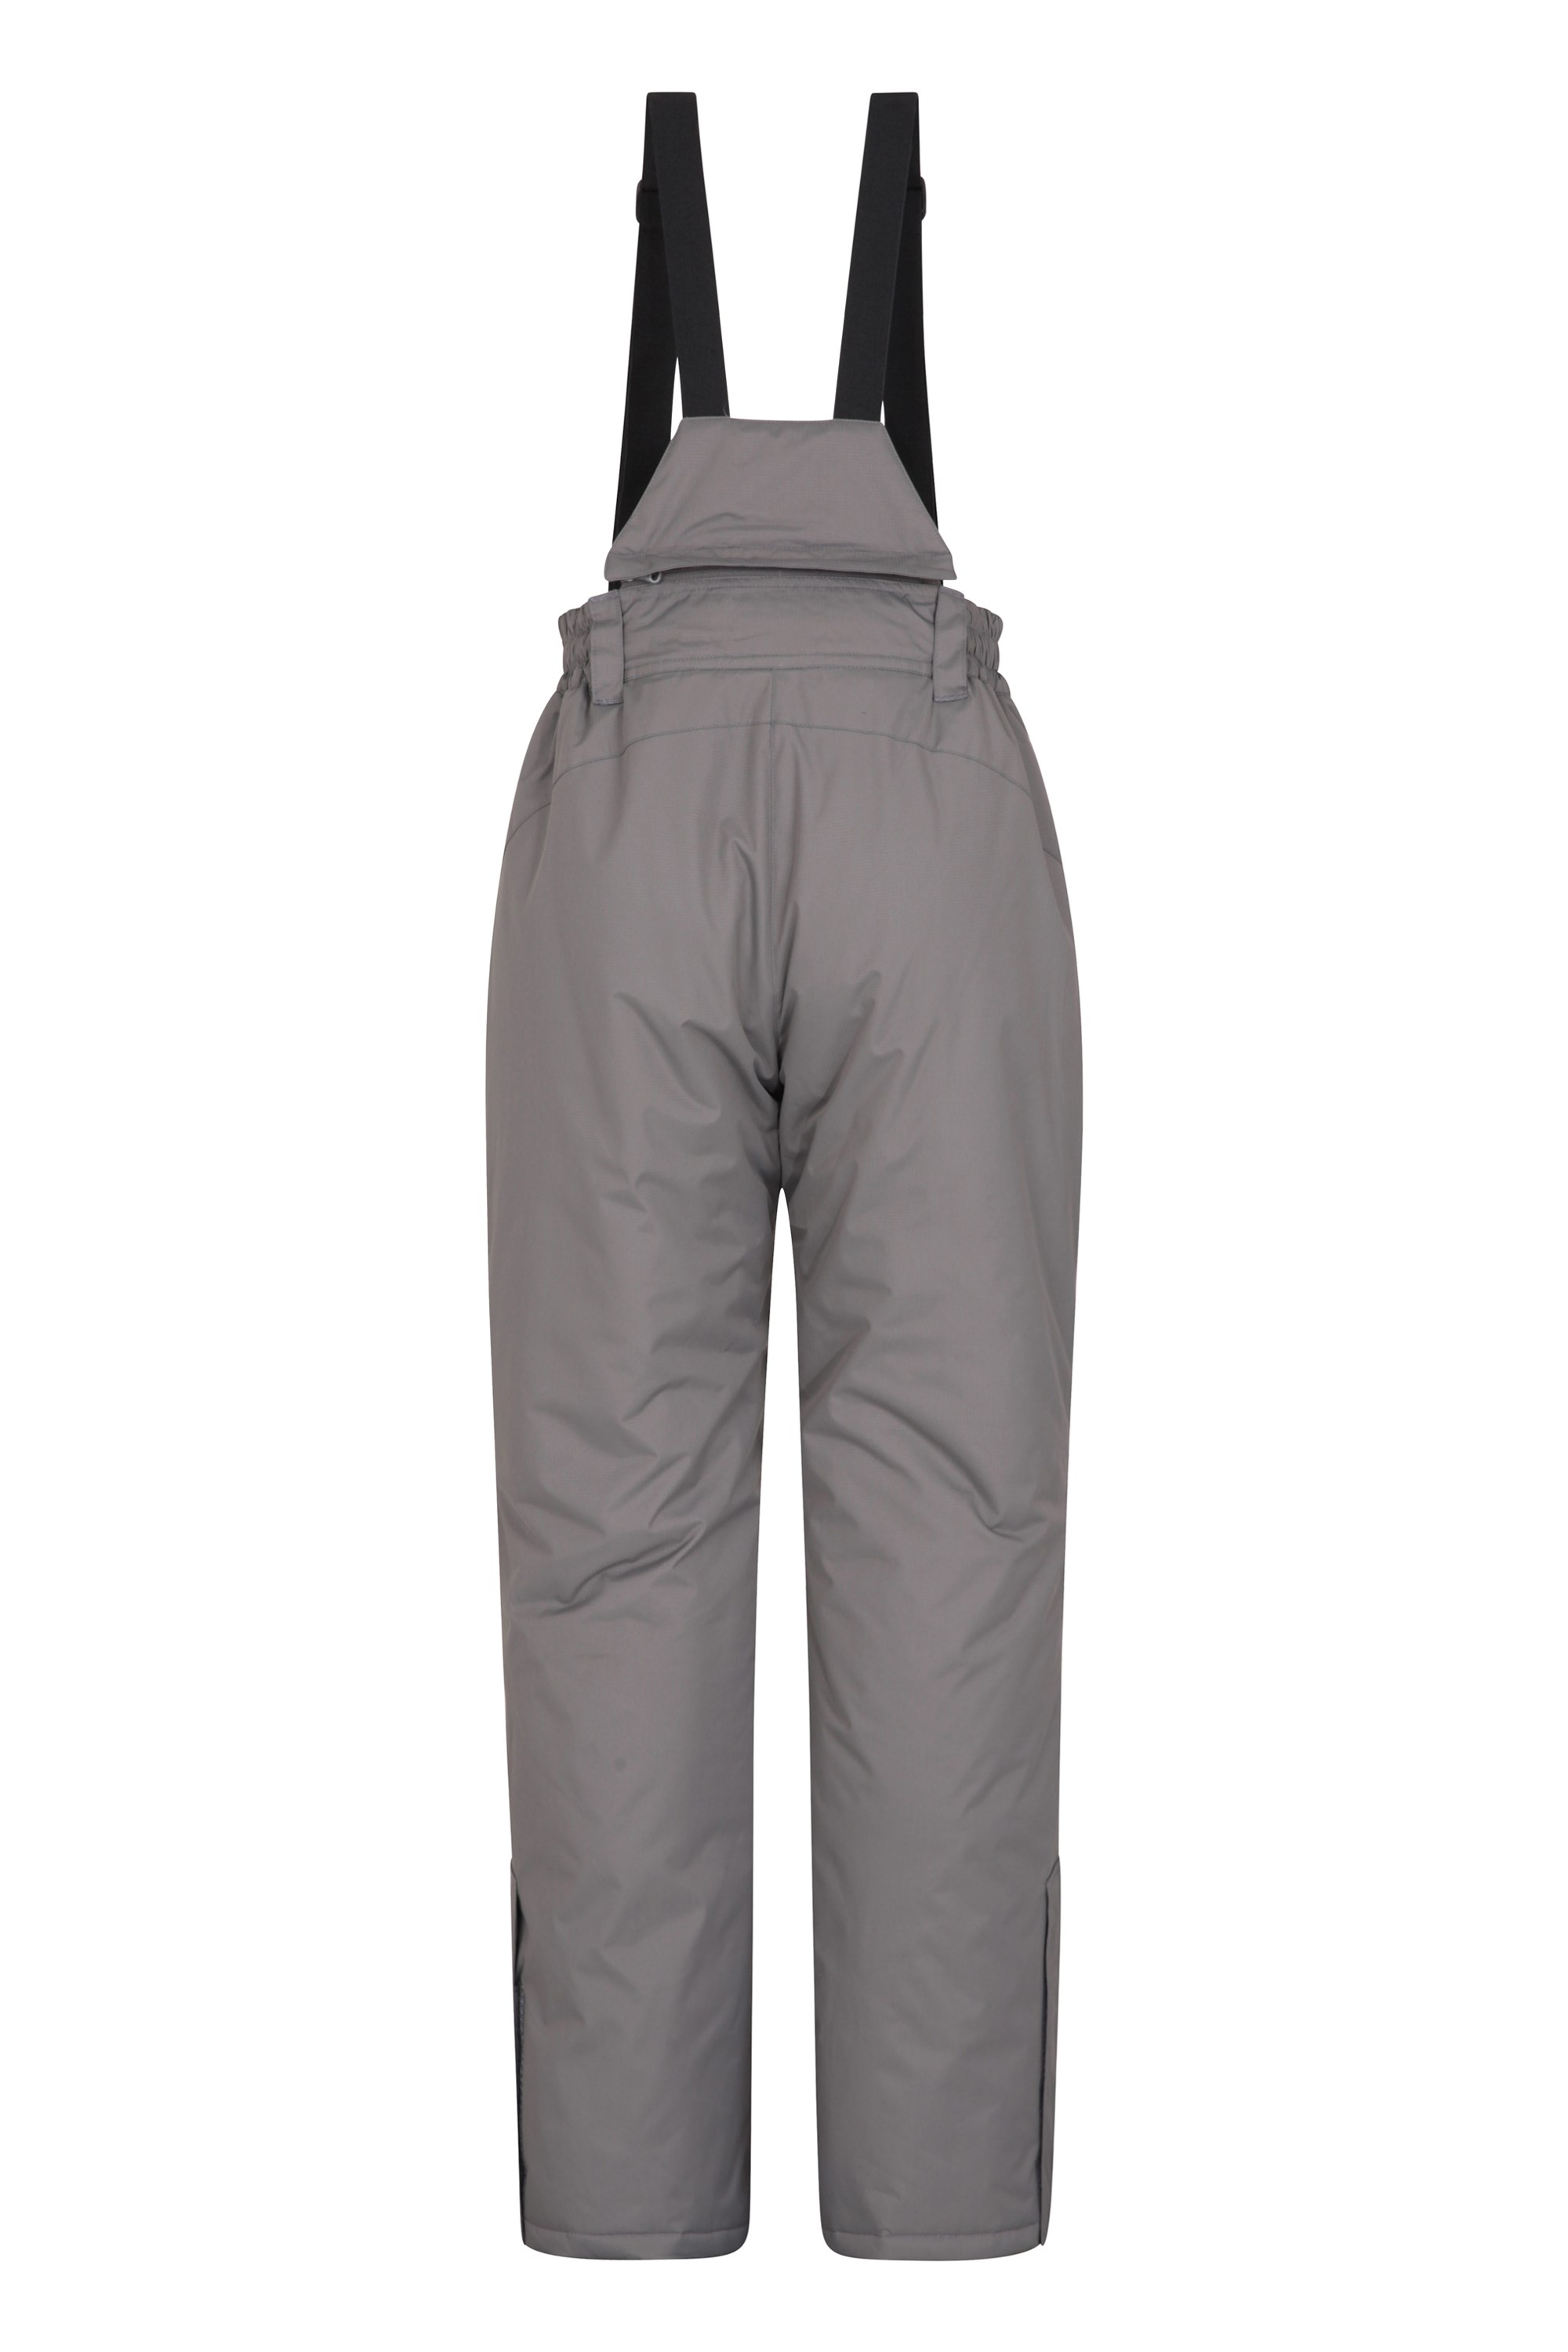 NEW Womens Mountain Warehouse Ski Trousers Salopettes 18 Moon White RRP £59.99 